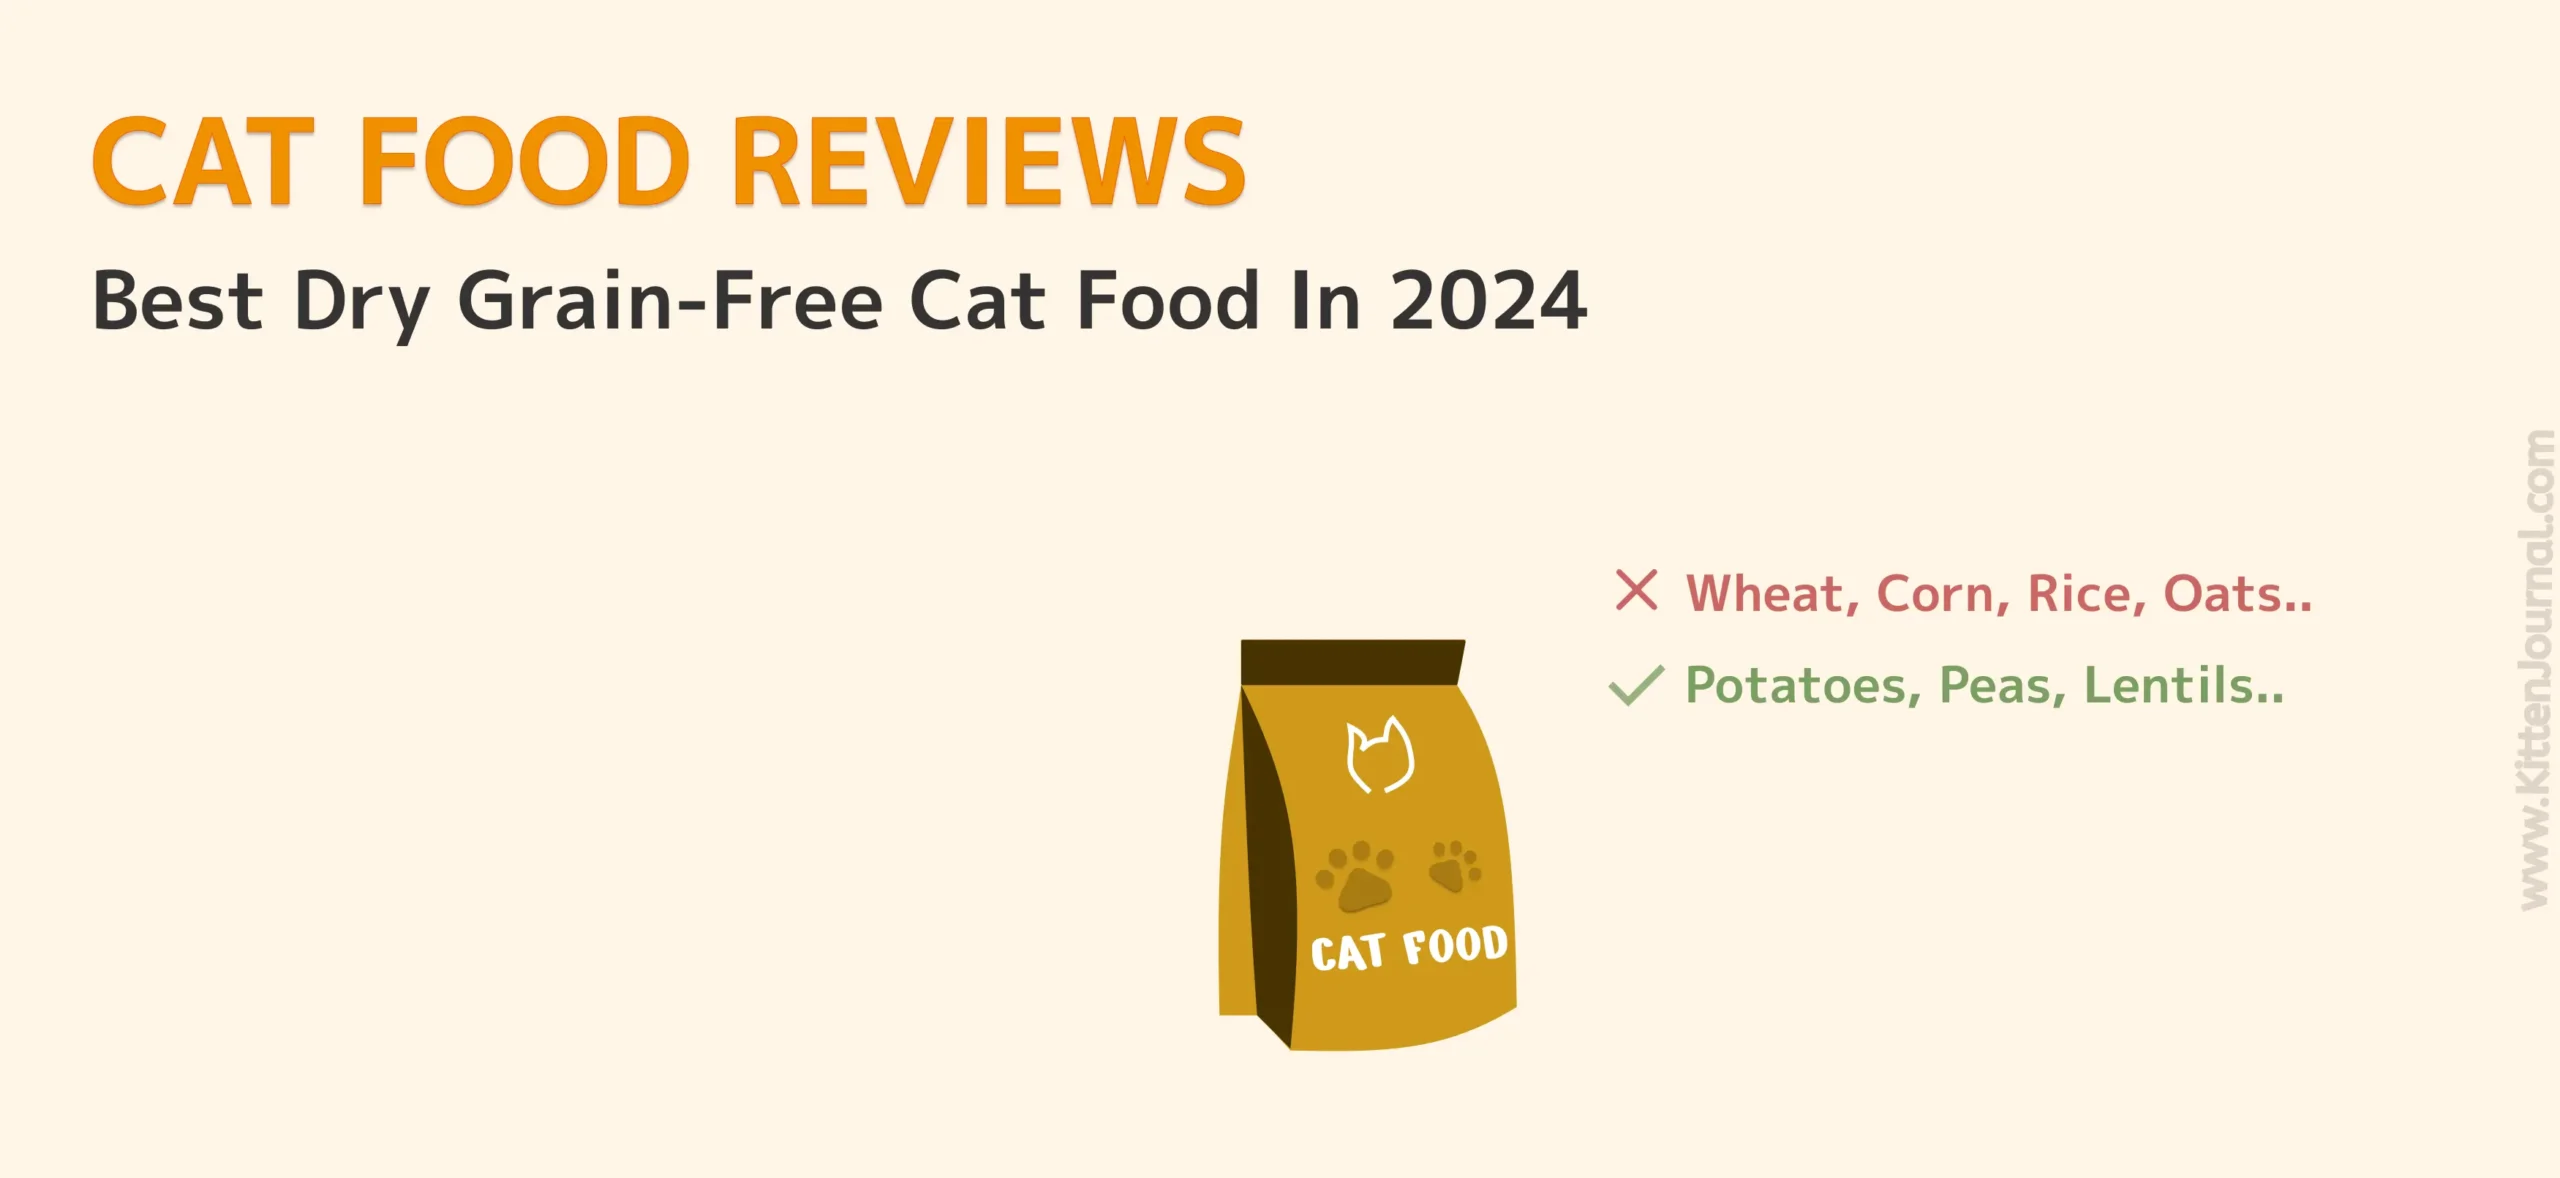 Top Dry Grain-Free Cat Food In 2024